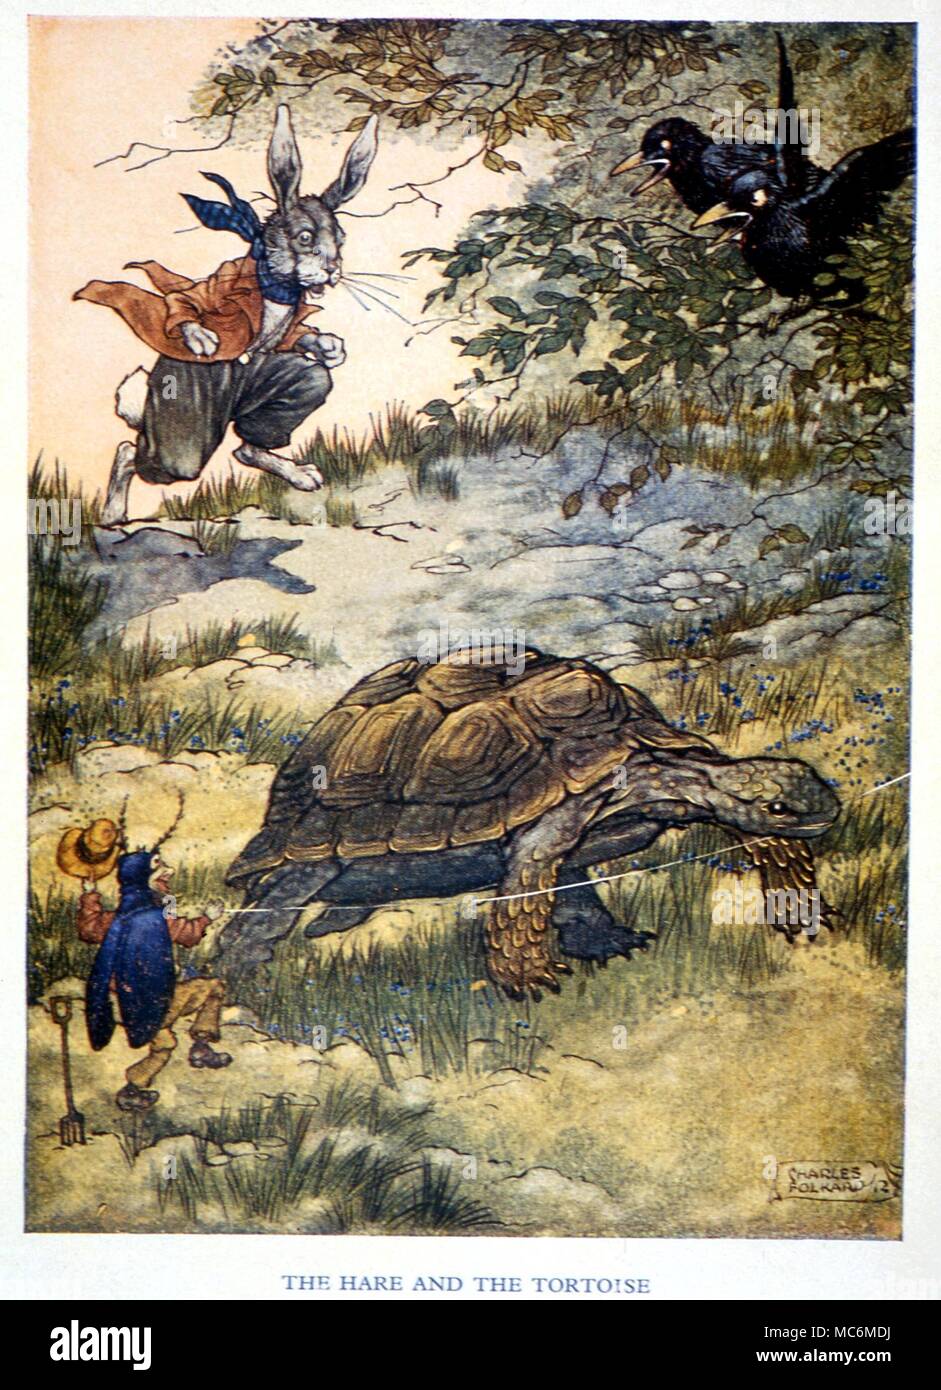 Marchen Fabeln Von Asop Der Hase Und Die Schildkrote Abbildung Von Charles Folkard Zu Aesops Fabeln 1912 Stockfotografie Alamy